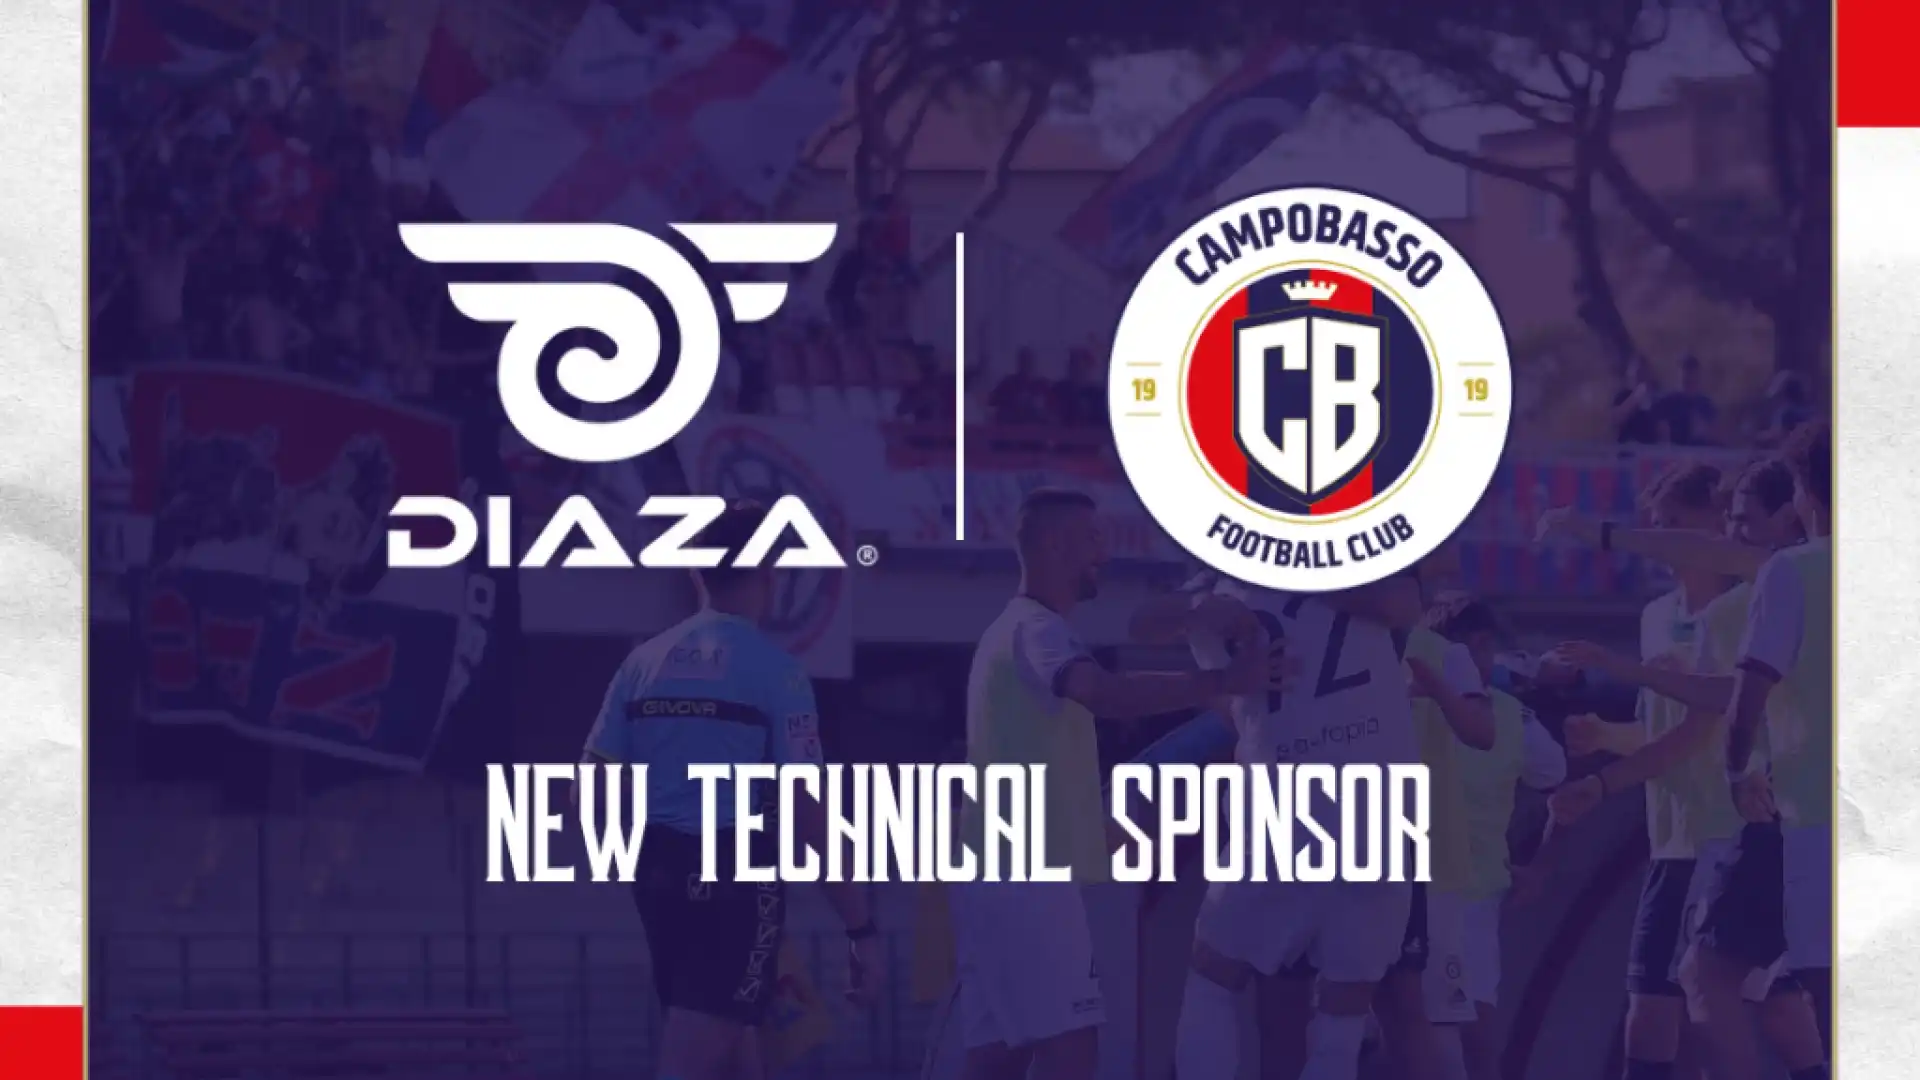 Campobasso FC - Diaza nuovo sponsor tecnico addio ad Adidas, rinnova Pacillo